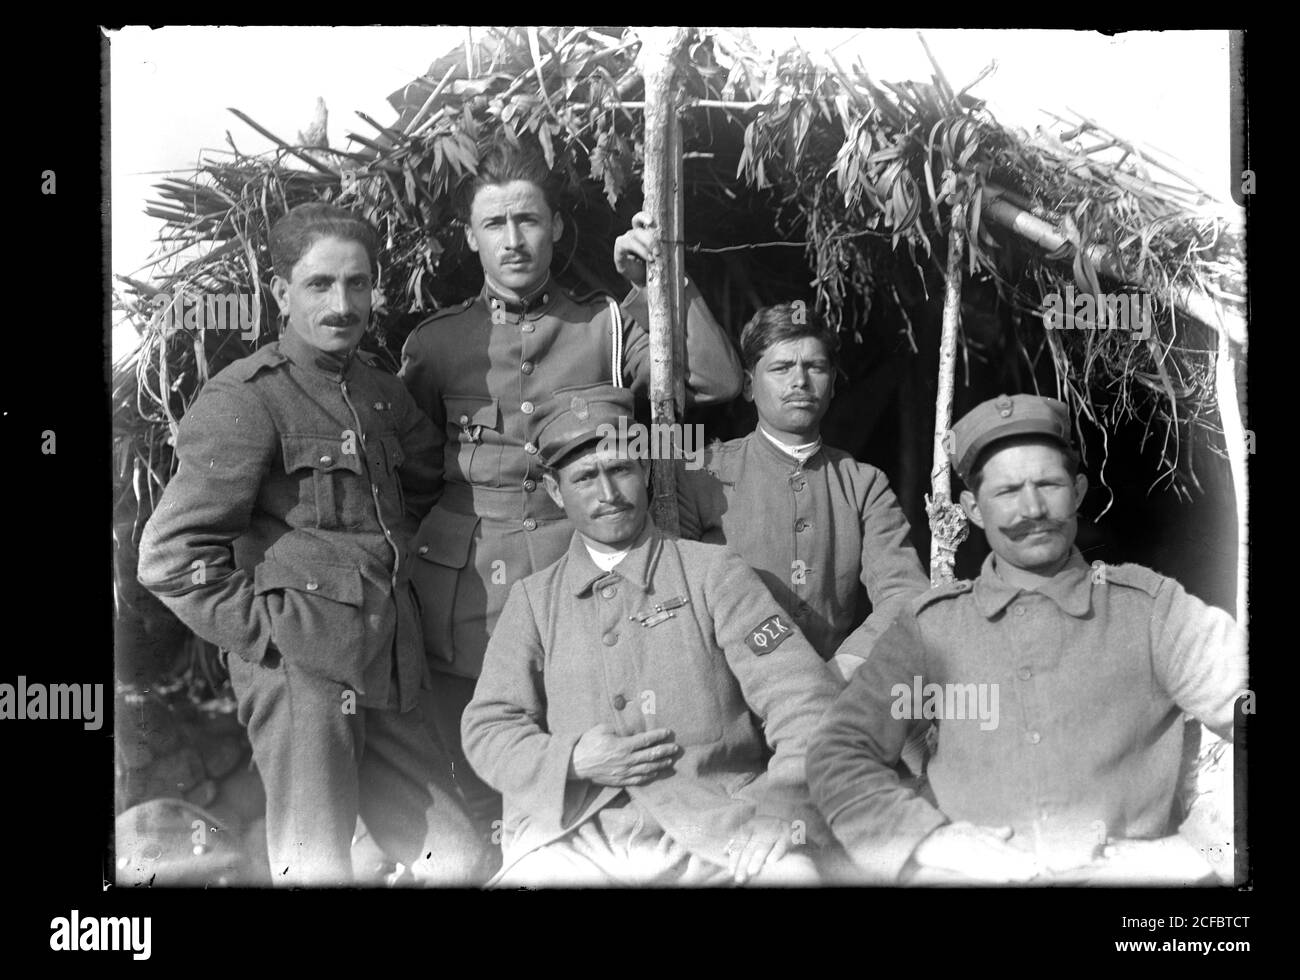 Gruppe griechischer Soldaten in der Türkei bei Izmir / Smyrna mit getarnter Unterschlupf um 1910. Einer der Männer trägt ein Phi Sigma Kappa Emblem auf seinem Uniform-Ärmel. Fotografie auf trockenem Glasplatte aus der Sammlung Herry W. Schaefer, um 1910. Stockfoto